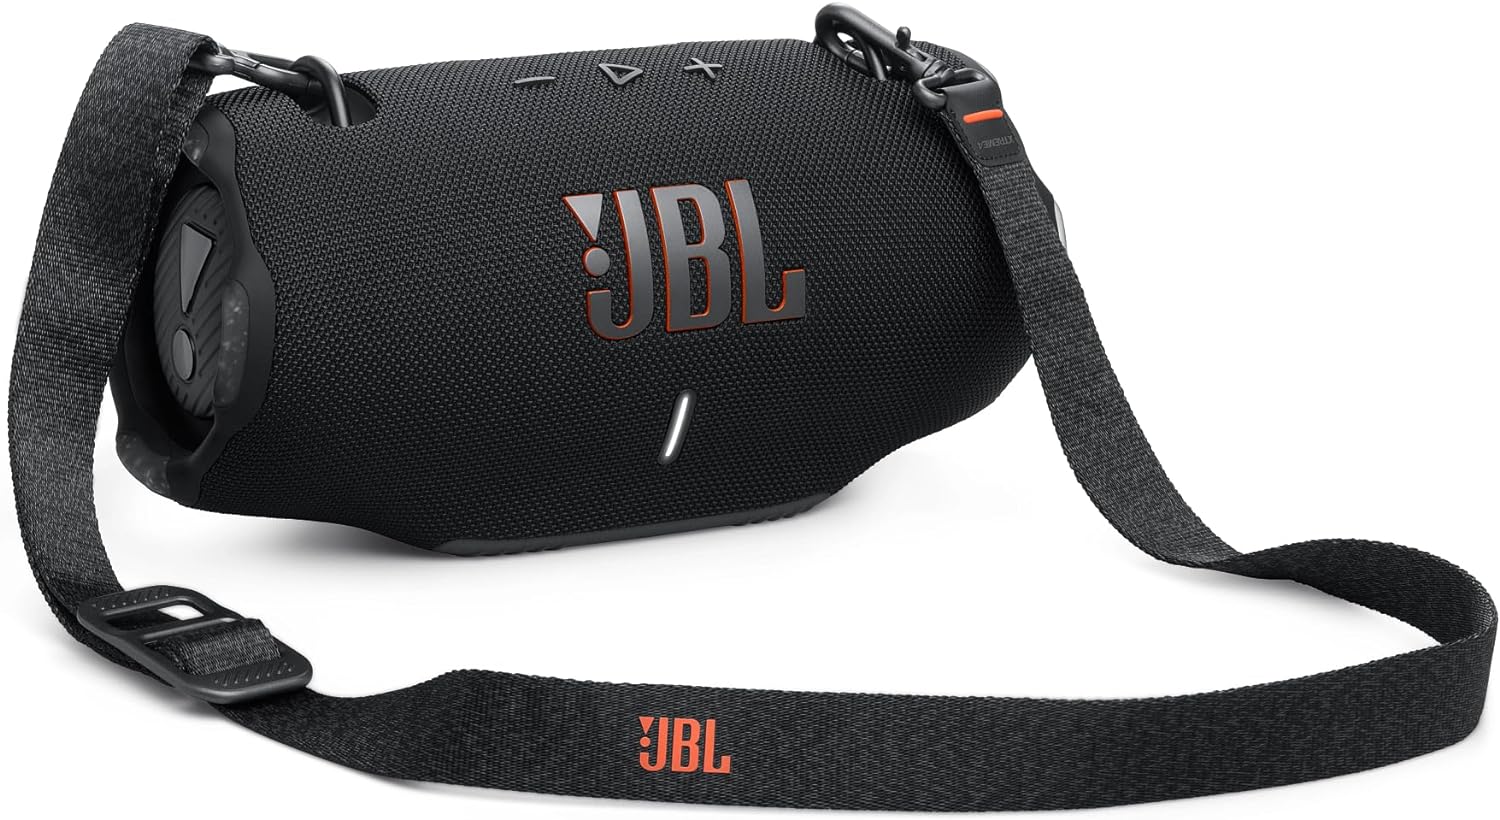 JBL Xtreme 4 | Portable waterproof speaker